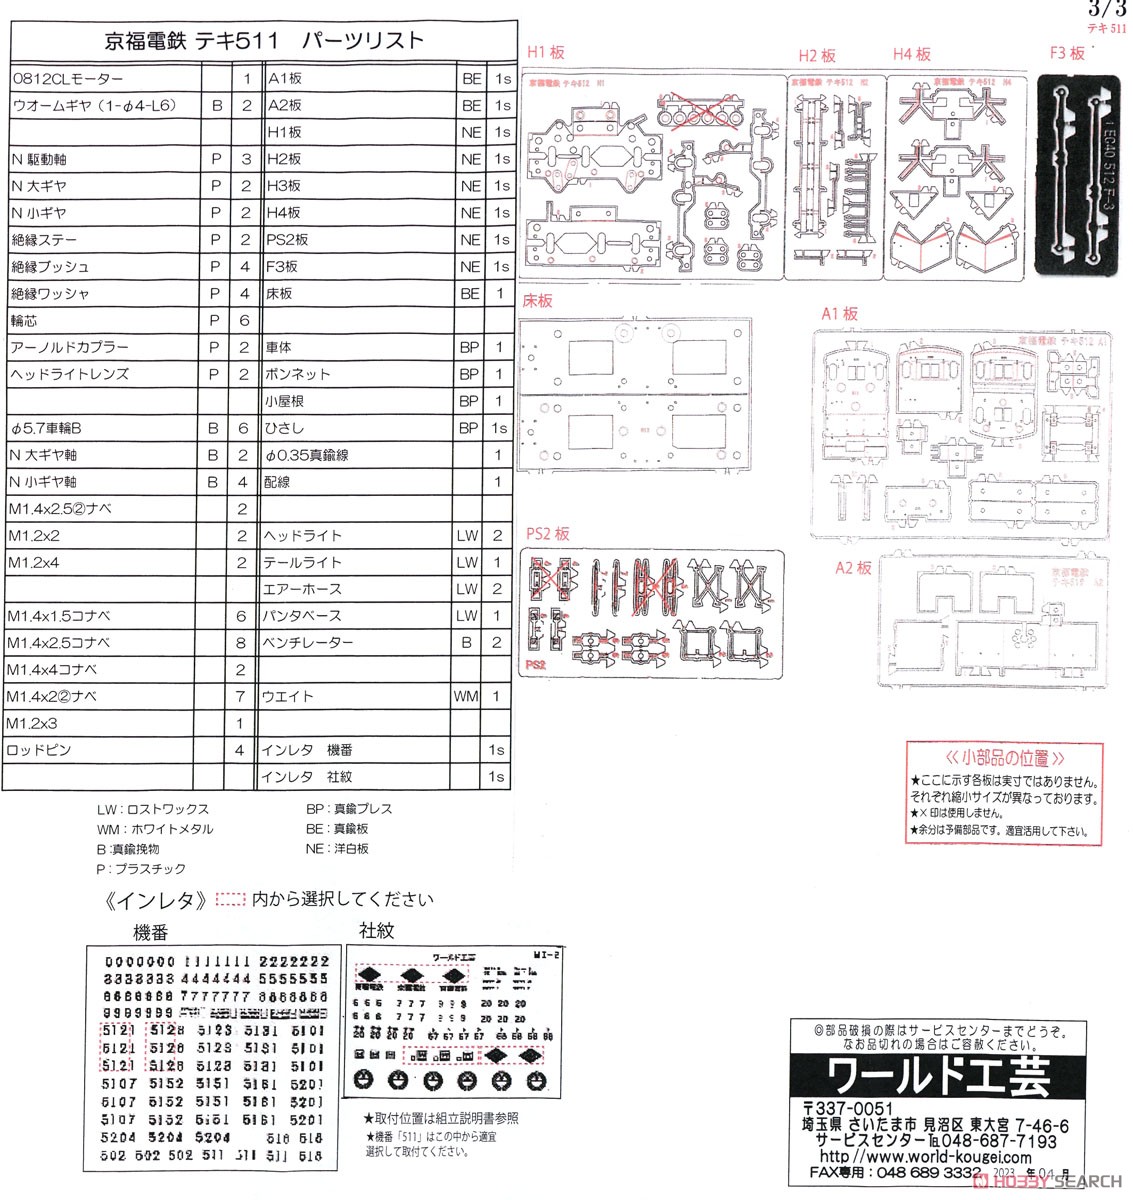 京福電鉄 テキ511形 (511,512) 電気機関車 組立キット (組み立てキット) (鉄道模型) 設計図4